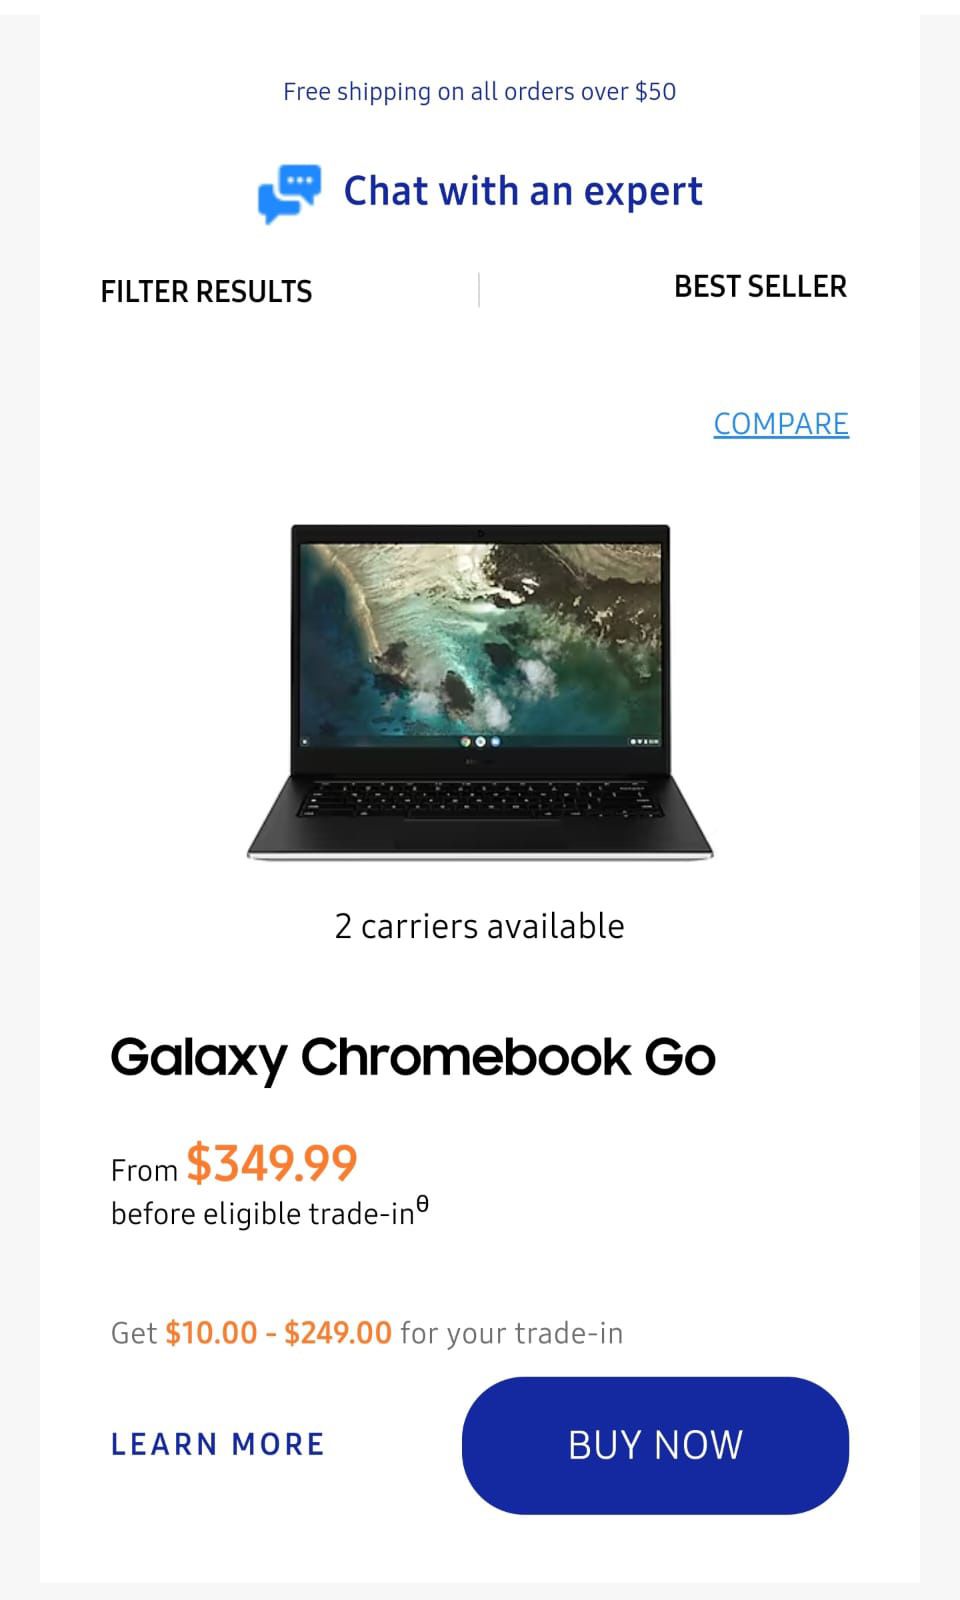 Galaxy Chromebook Go 